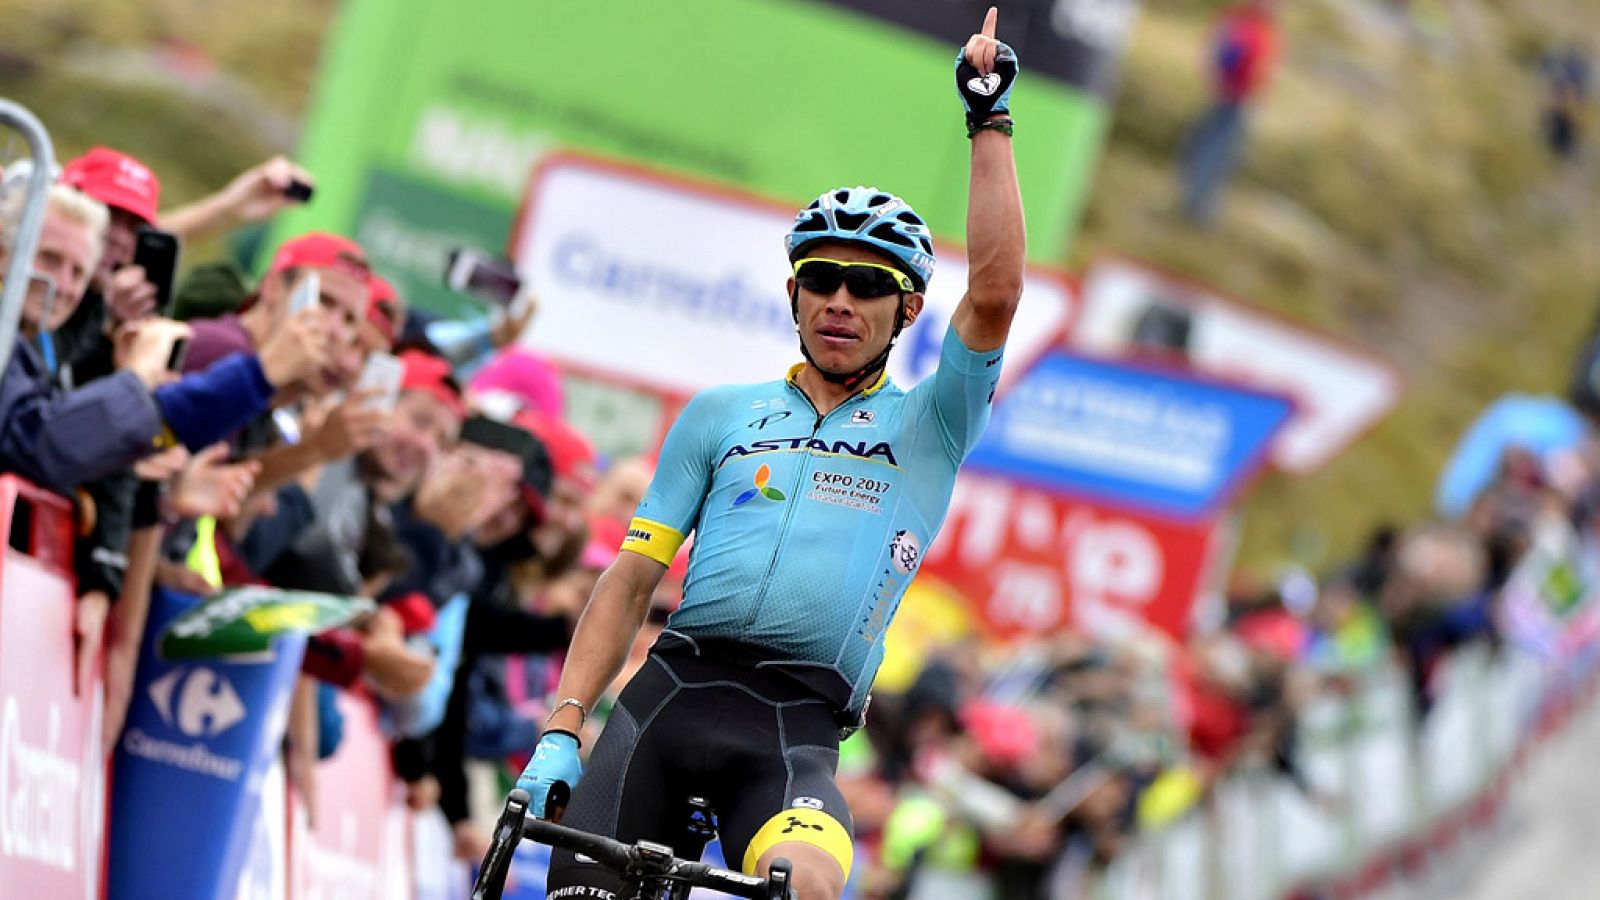 El colombiano Miguel Ángel López (Astana) se impuso en la undécima etapa de la Vuelta a España, entre Lorca y Calar Alto, de 187 kilómetros, en la que el británico Chris Froome (Sky) mantuvo el liderato. López, de 23 años, entró en solitario con un t